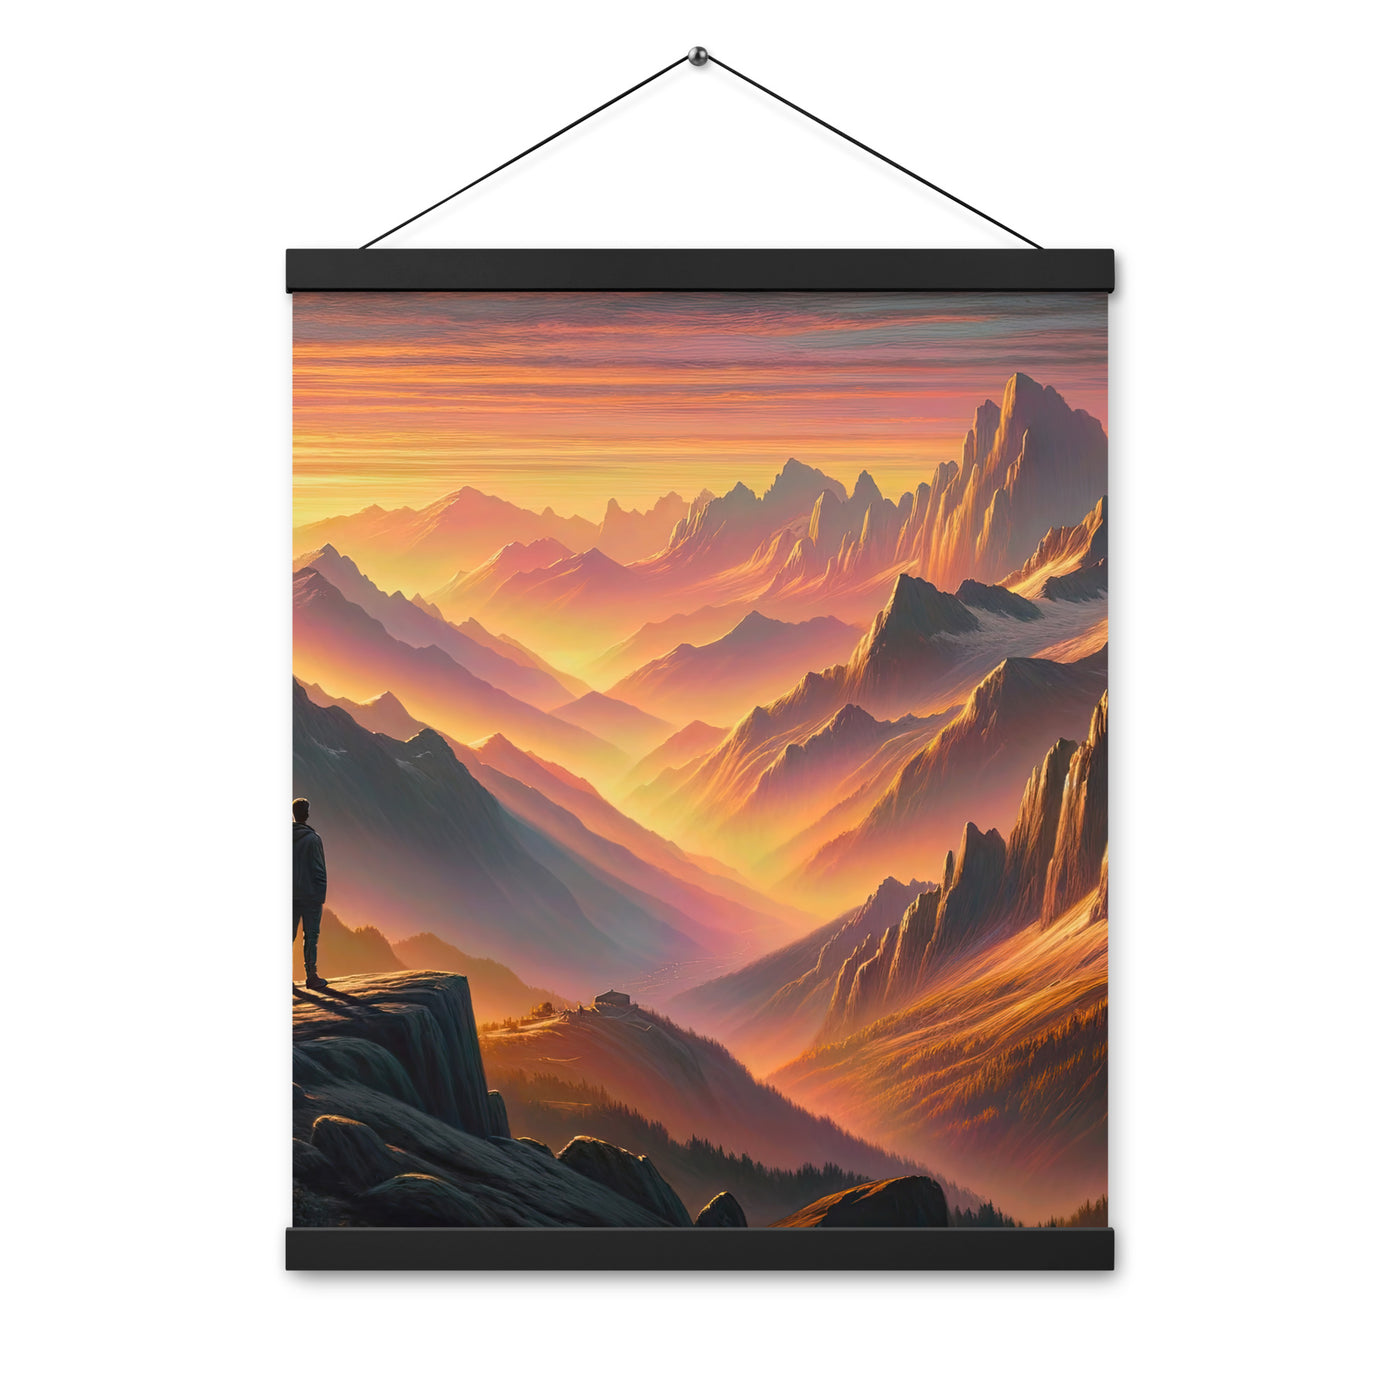 Ölgemälde der Alpen in der goldenen Stunde mit Wanderer, Orange-Rosa Bergpanorama - Premium Poster mit Aufhängung wandern xxx yyy zzz 40.6 x 50.8 cm